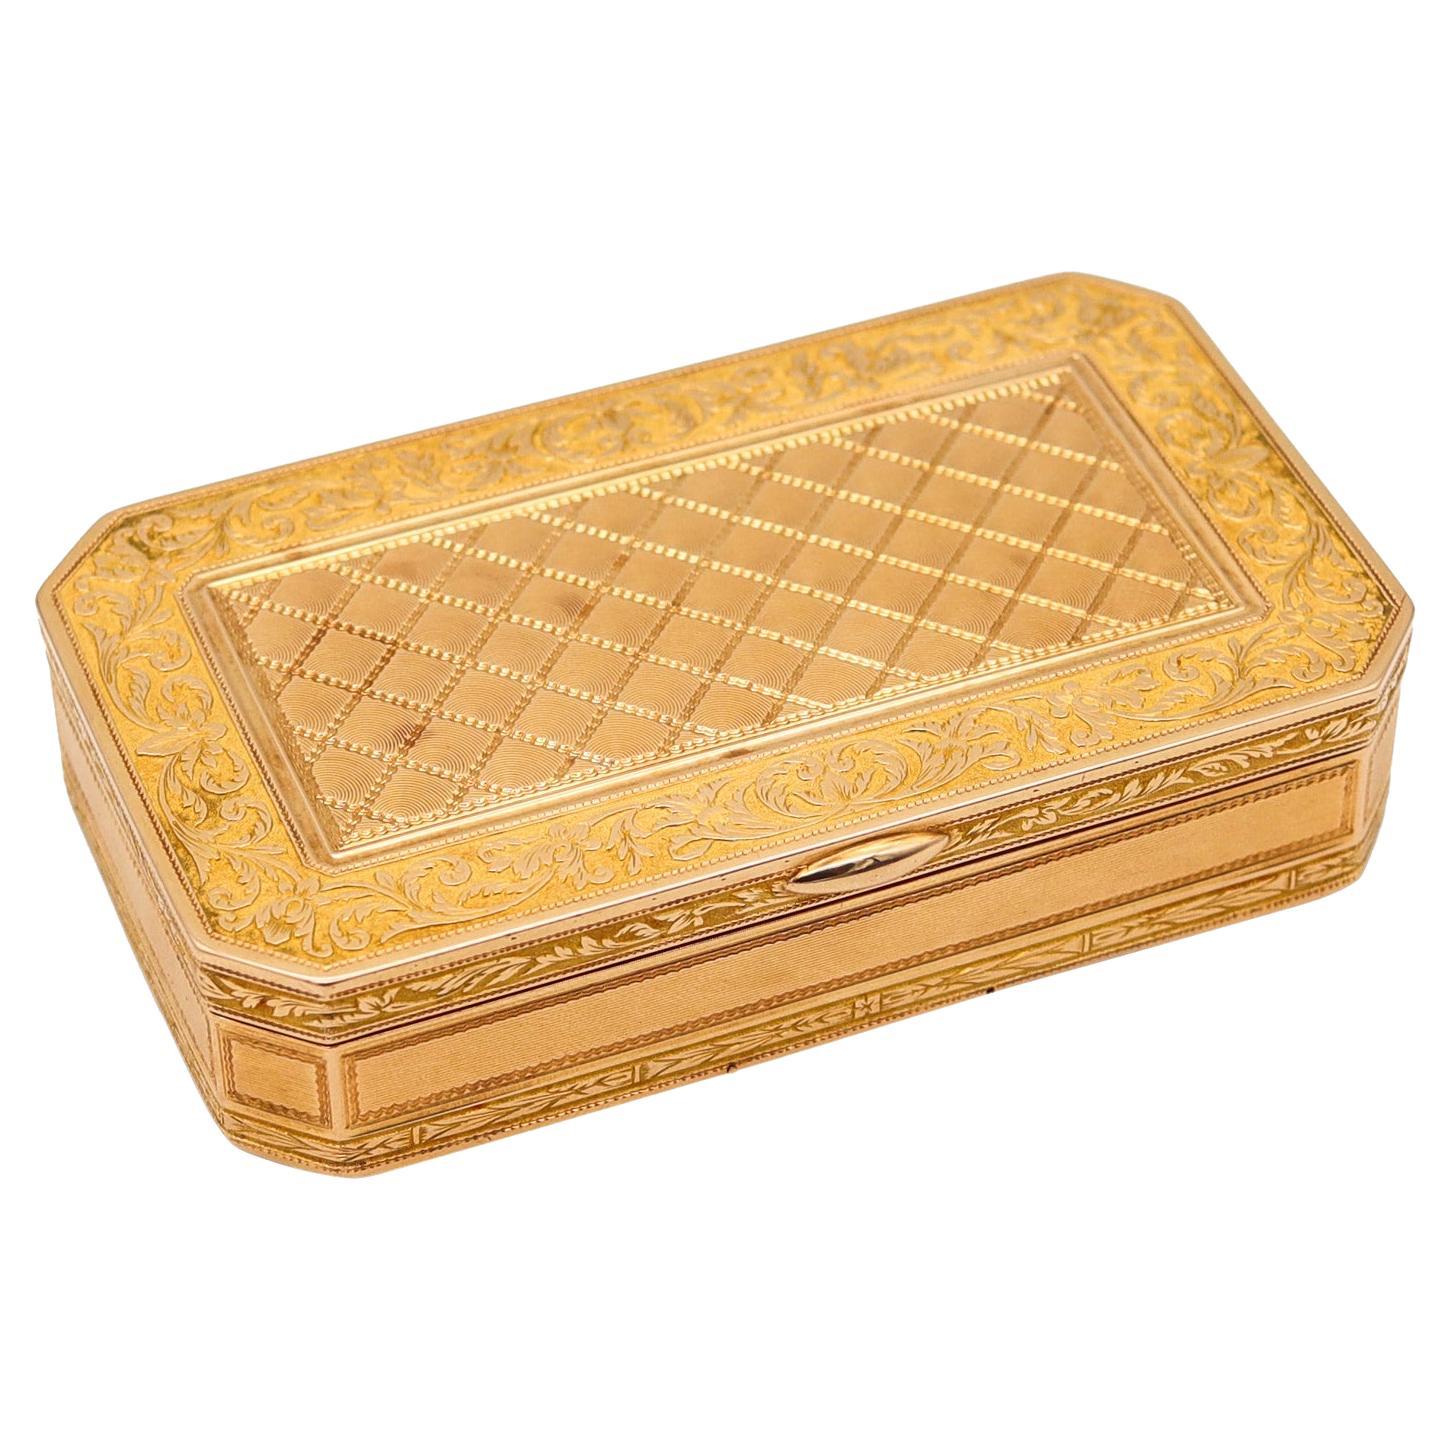 Caja de rapé rectangular neoclásica Luis XVI francesa de 1819-1838 labrada en oro de 18 quilates